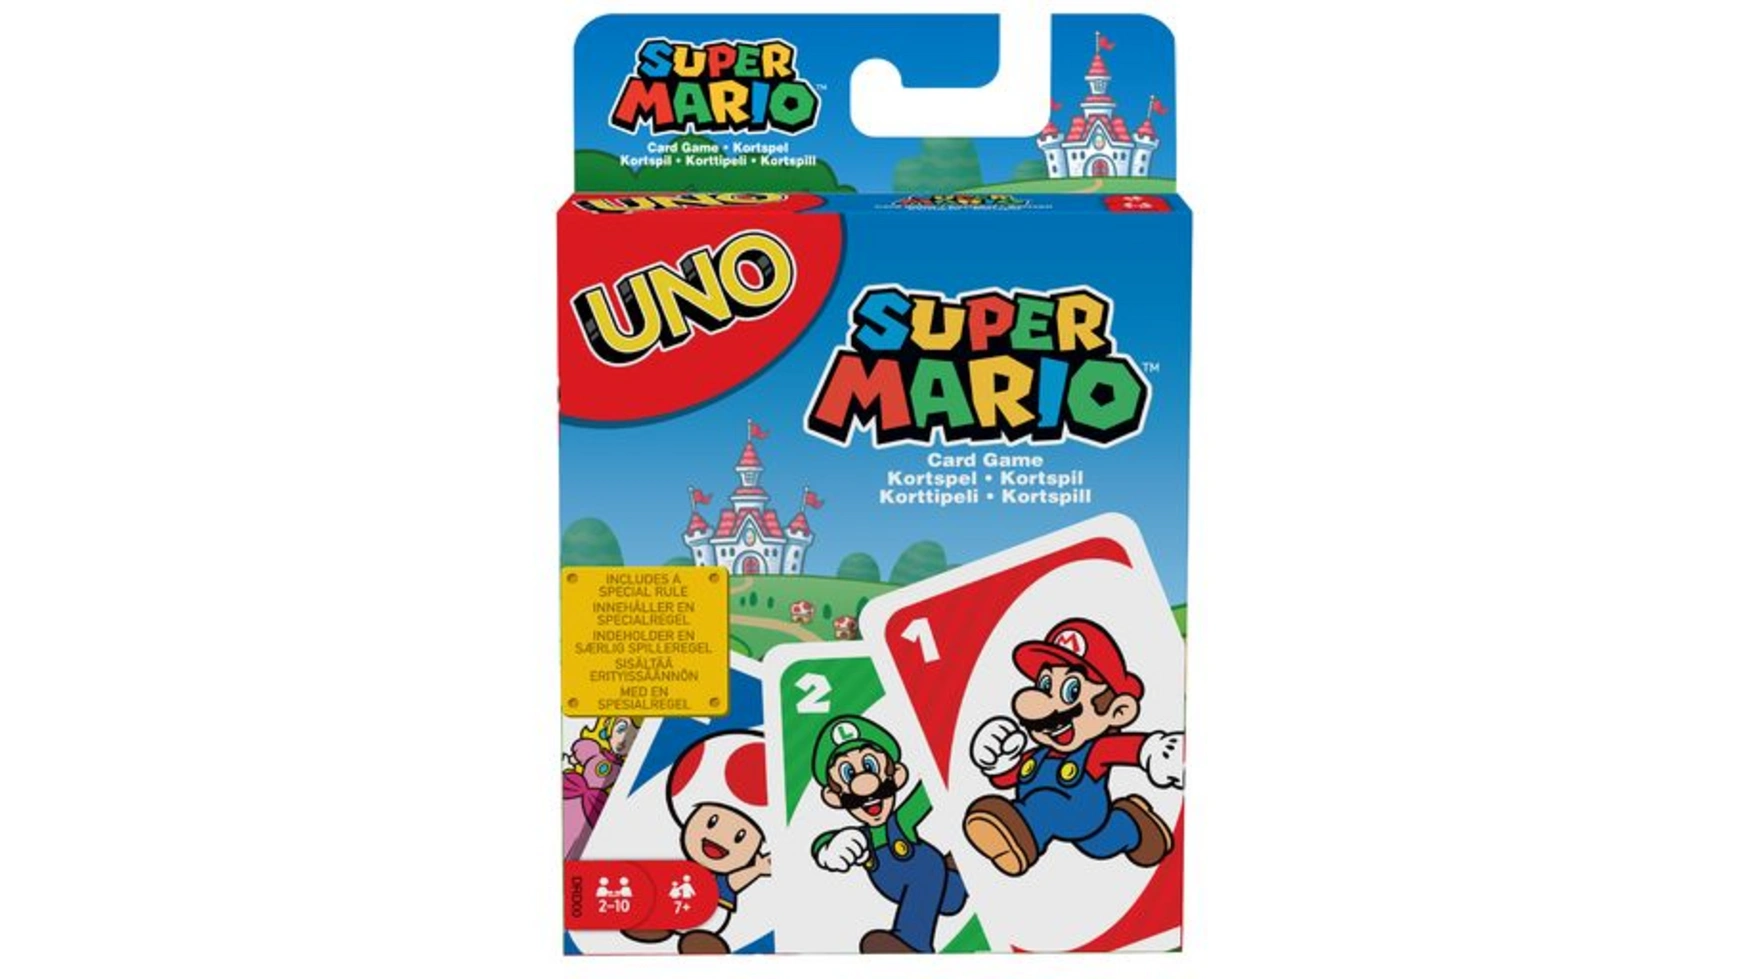 Mattel Games UNO Super Mario, карточная игра, настольная игра, семейная игра mattel games phase 10 карточная игра настольная игра семейная игра детская игра